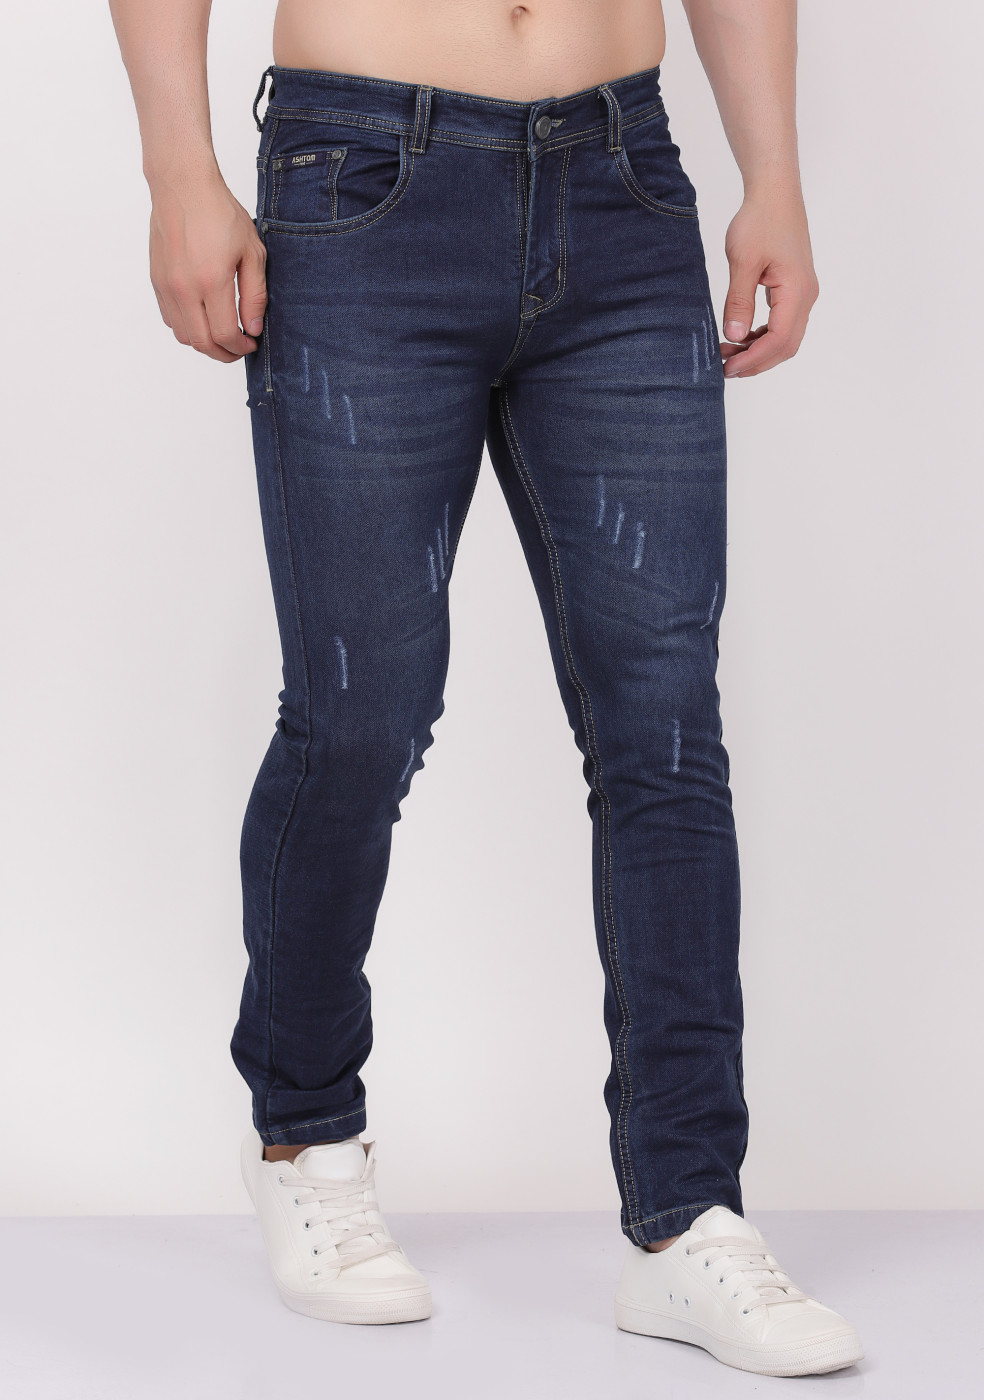 DOLCE & GABBANA D&G Destroy Damage Denim Pants Jeans Men 46 Crash | eBay